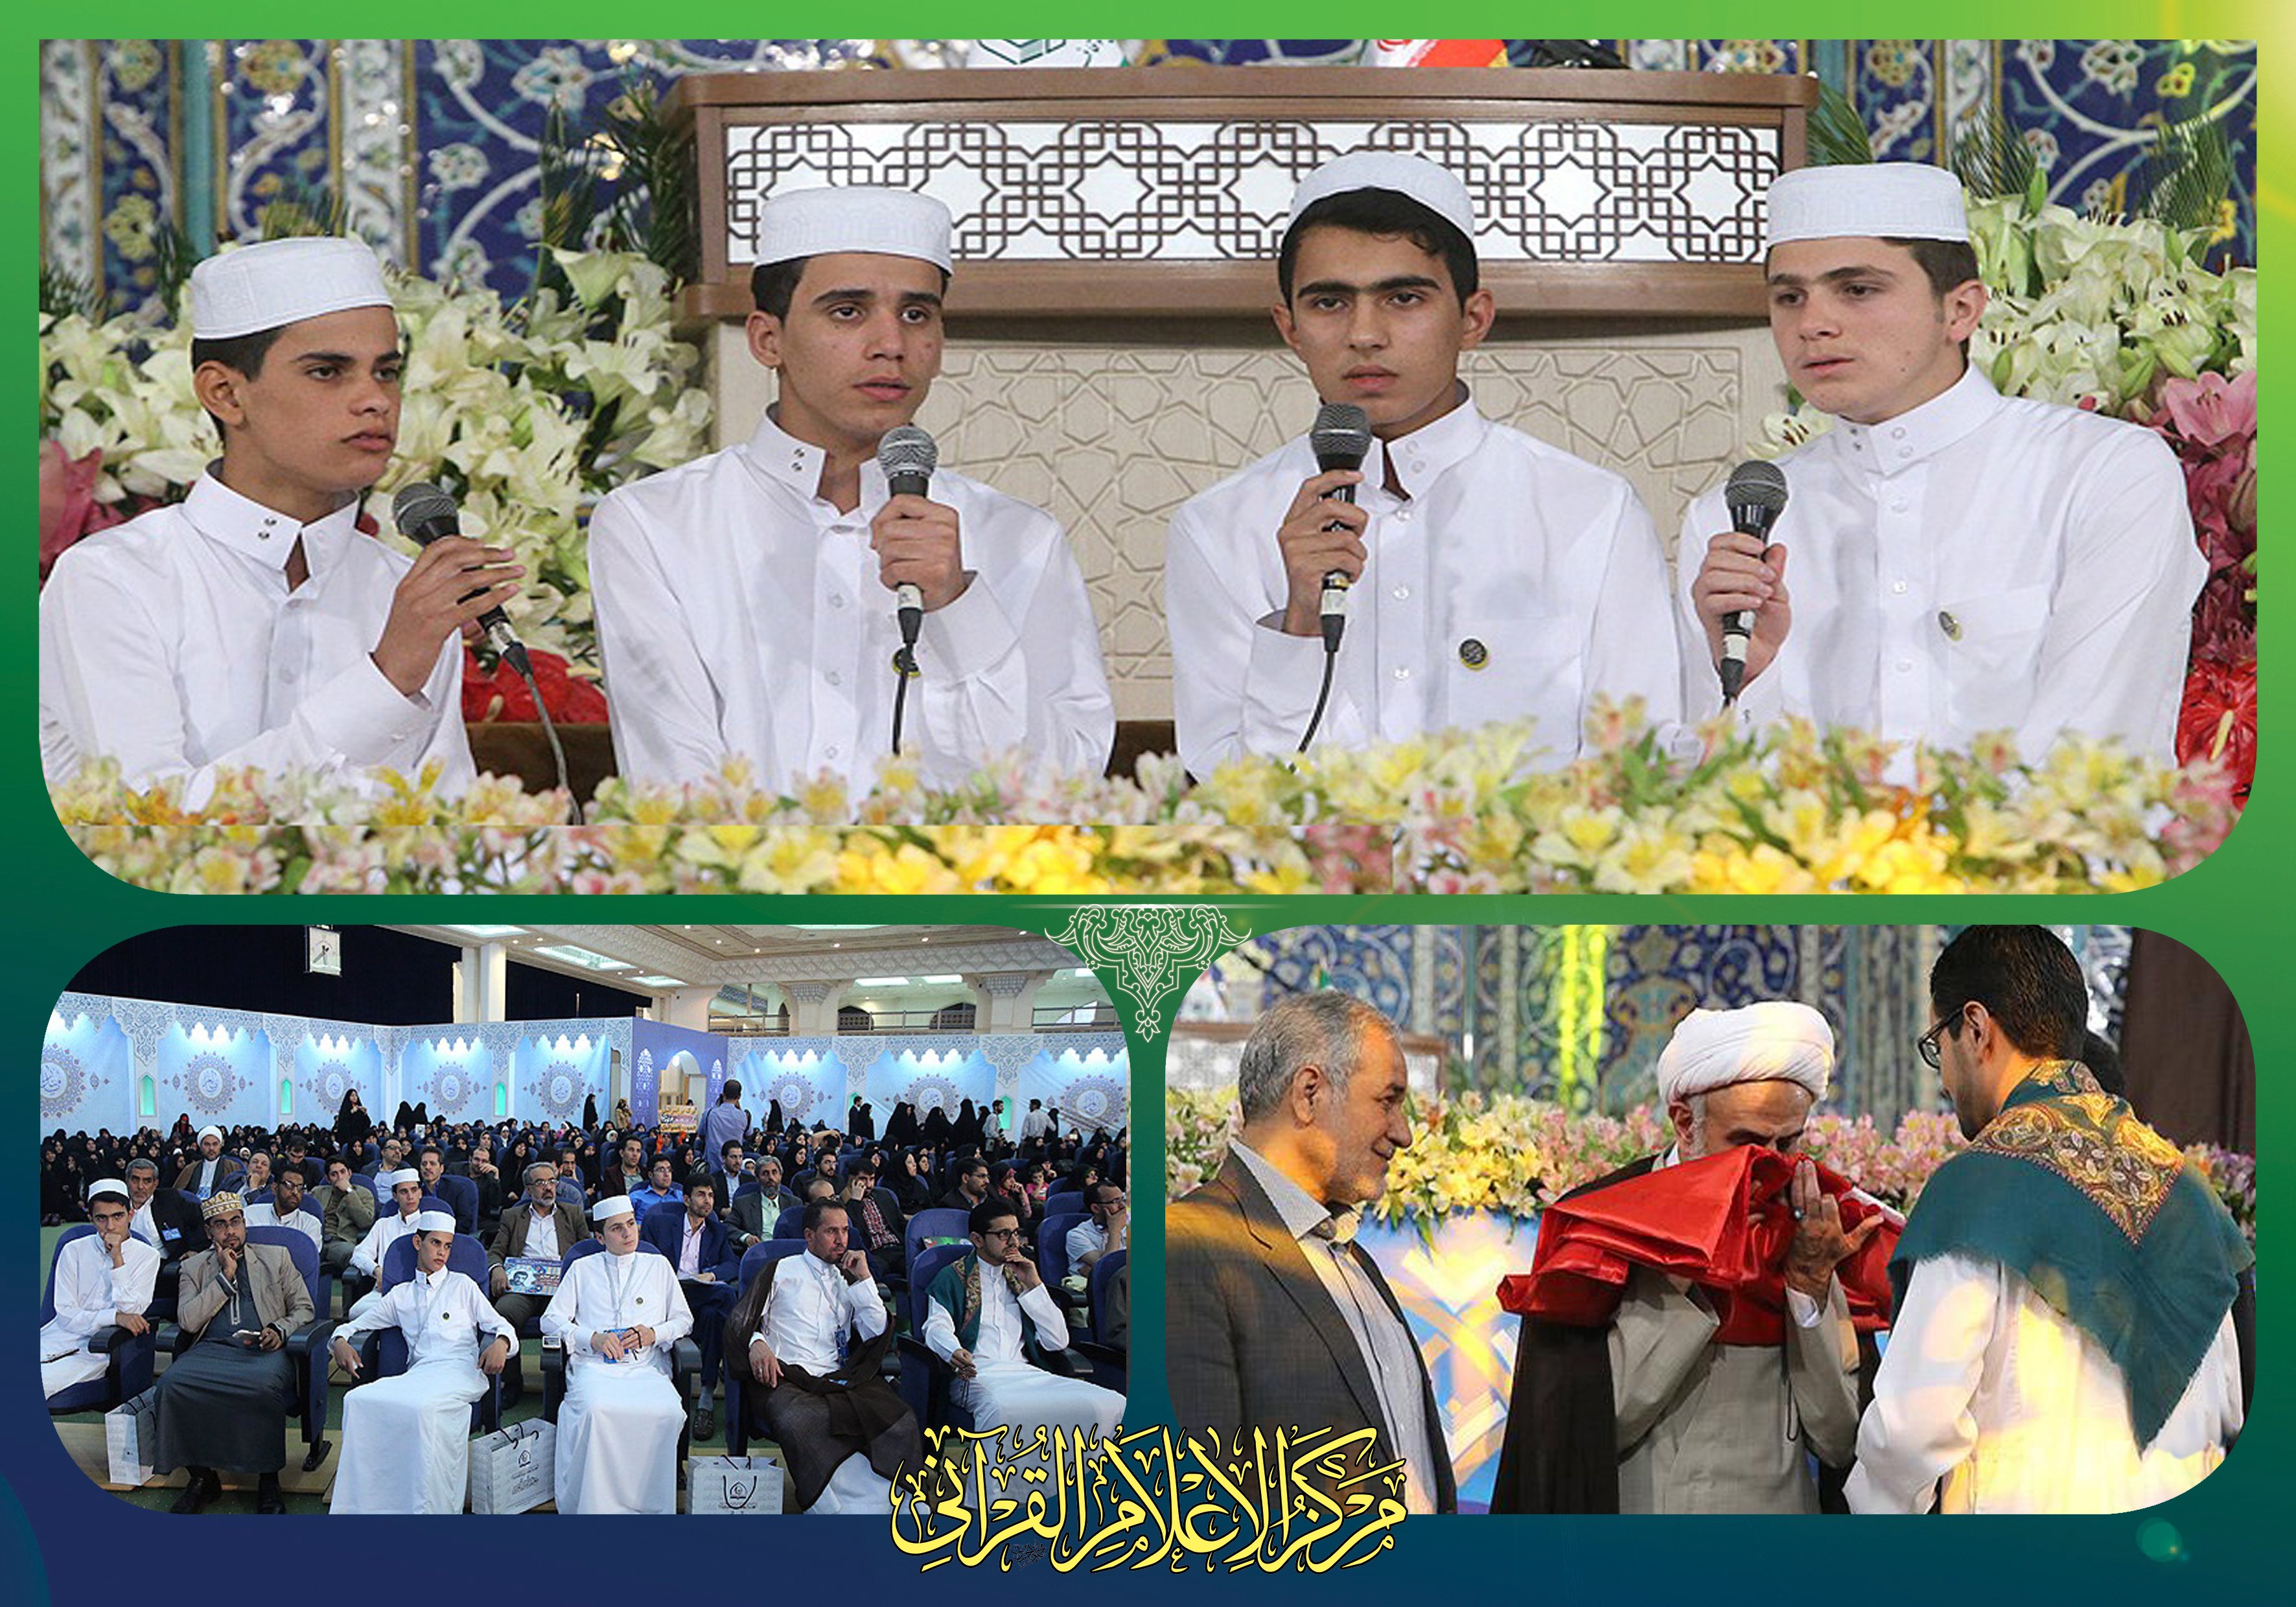 وفد معهد القرآن الكريم يشارك في فعاليات الدورة الثالثة والثلاثين لمسابقات حفظ وتلاوة القرآن الكريم في إيران